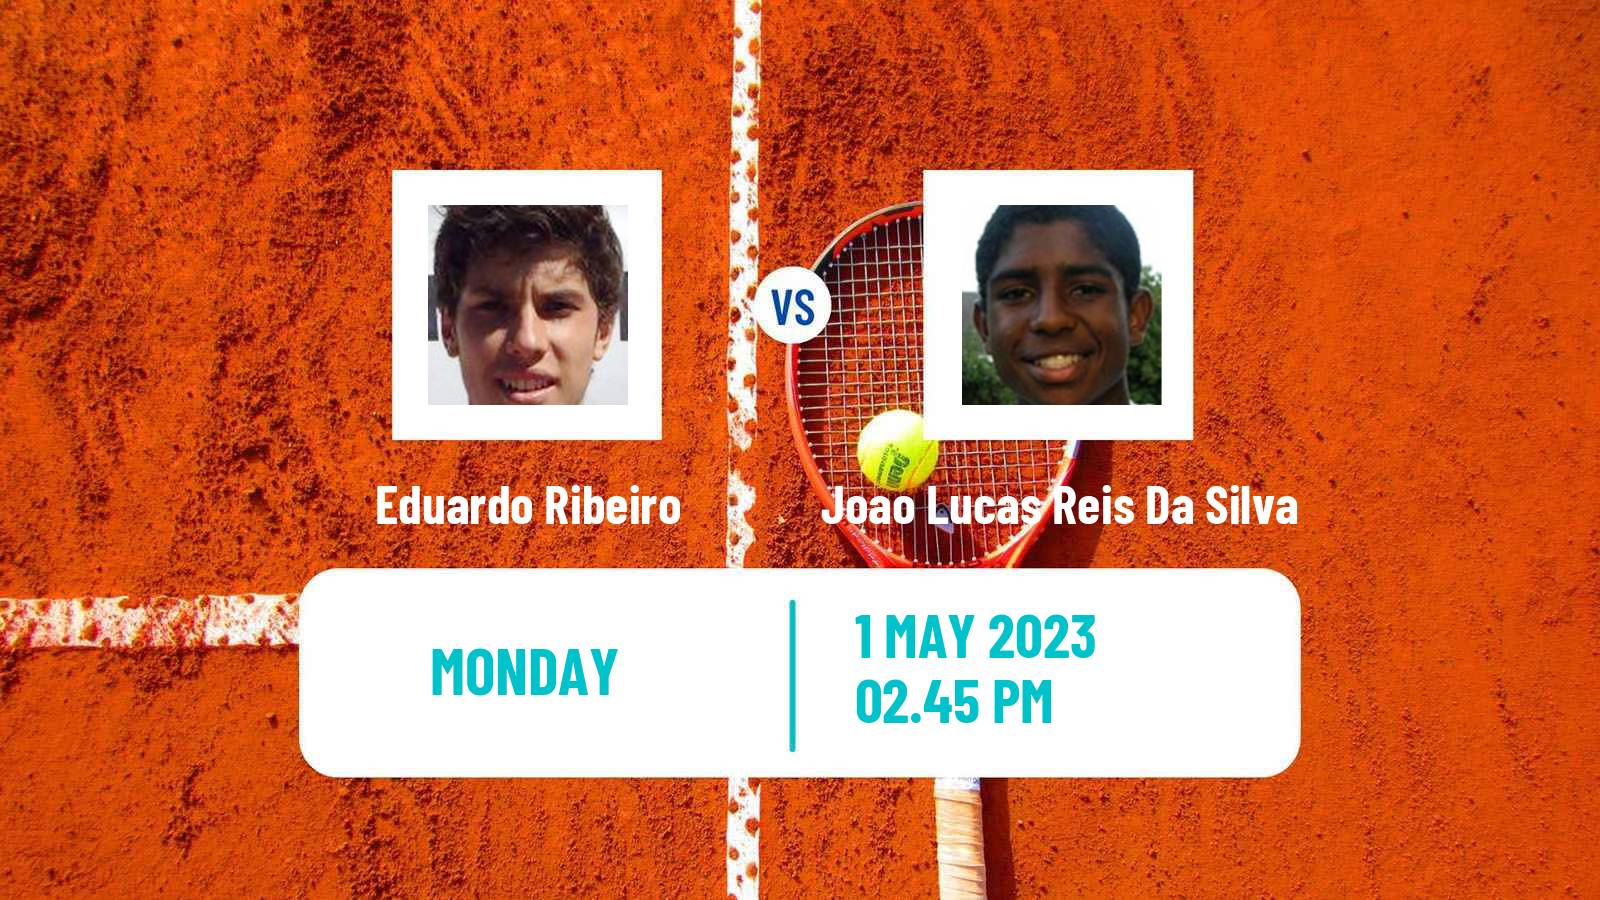 Tennis ATP Challenger Eduardo Ribeiro - Joao Lucas Reis Da Silva